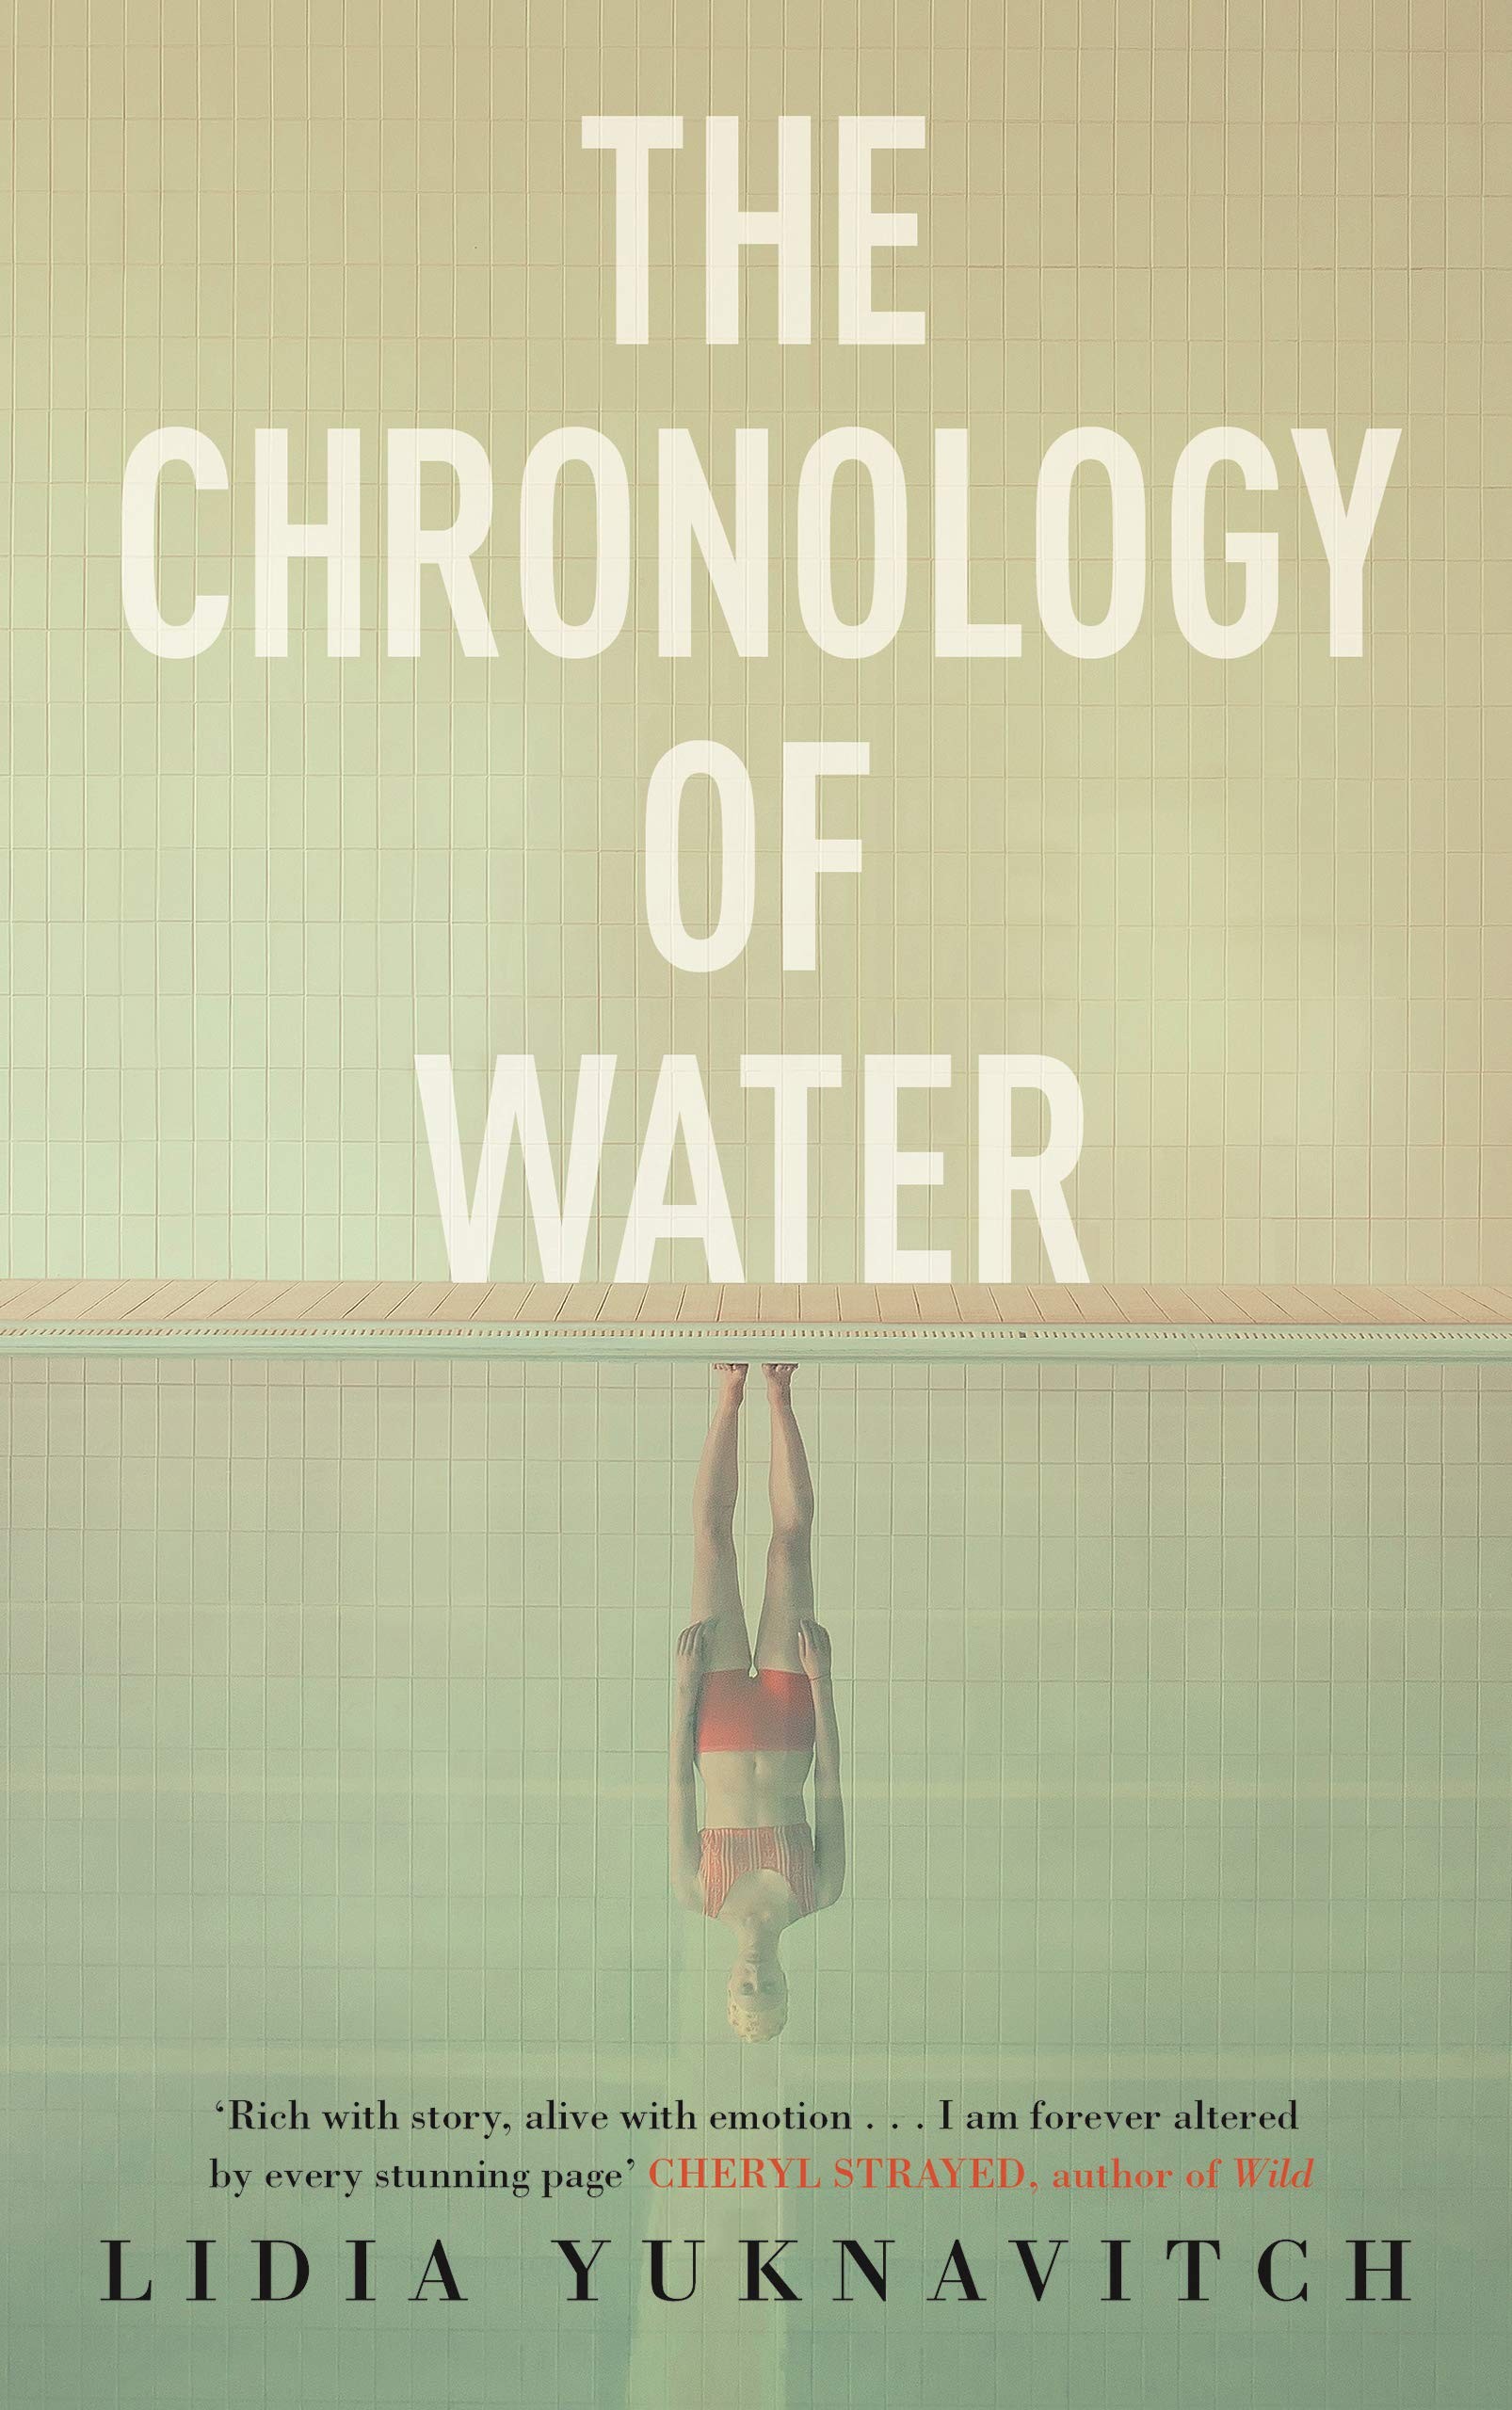 Capa de The Chronology of Water, livro de memórias de Lidia Yuknavitch (Foto: Divulgação)